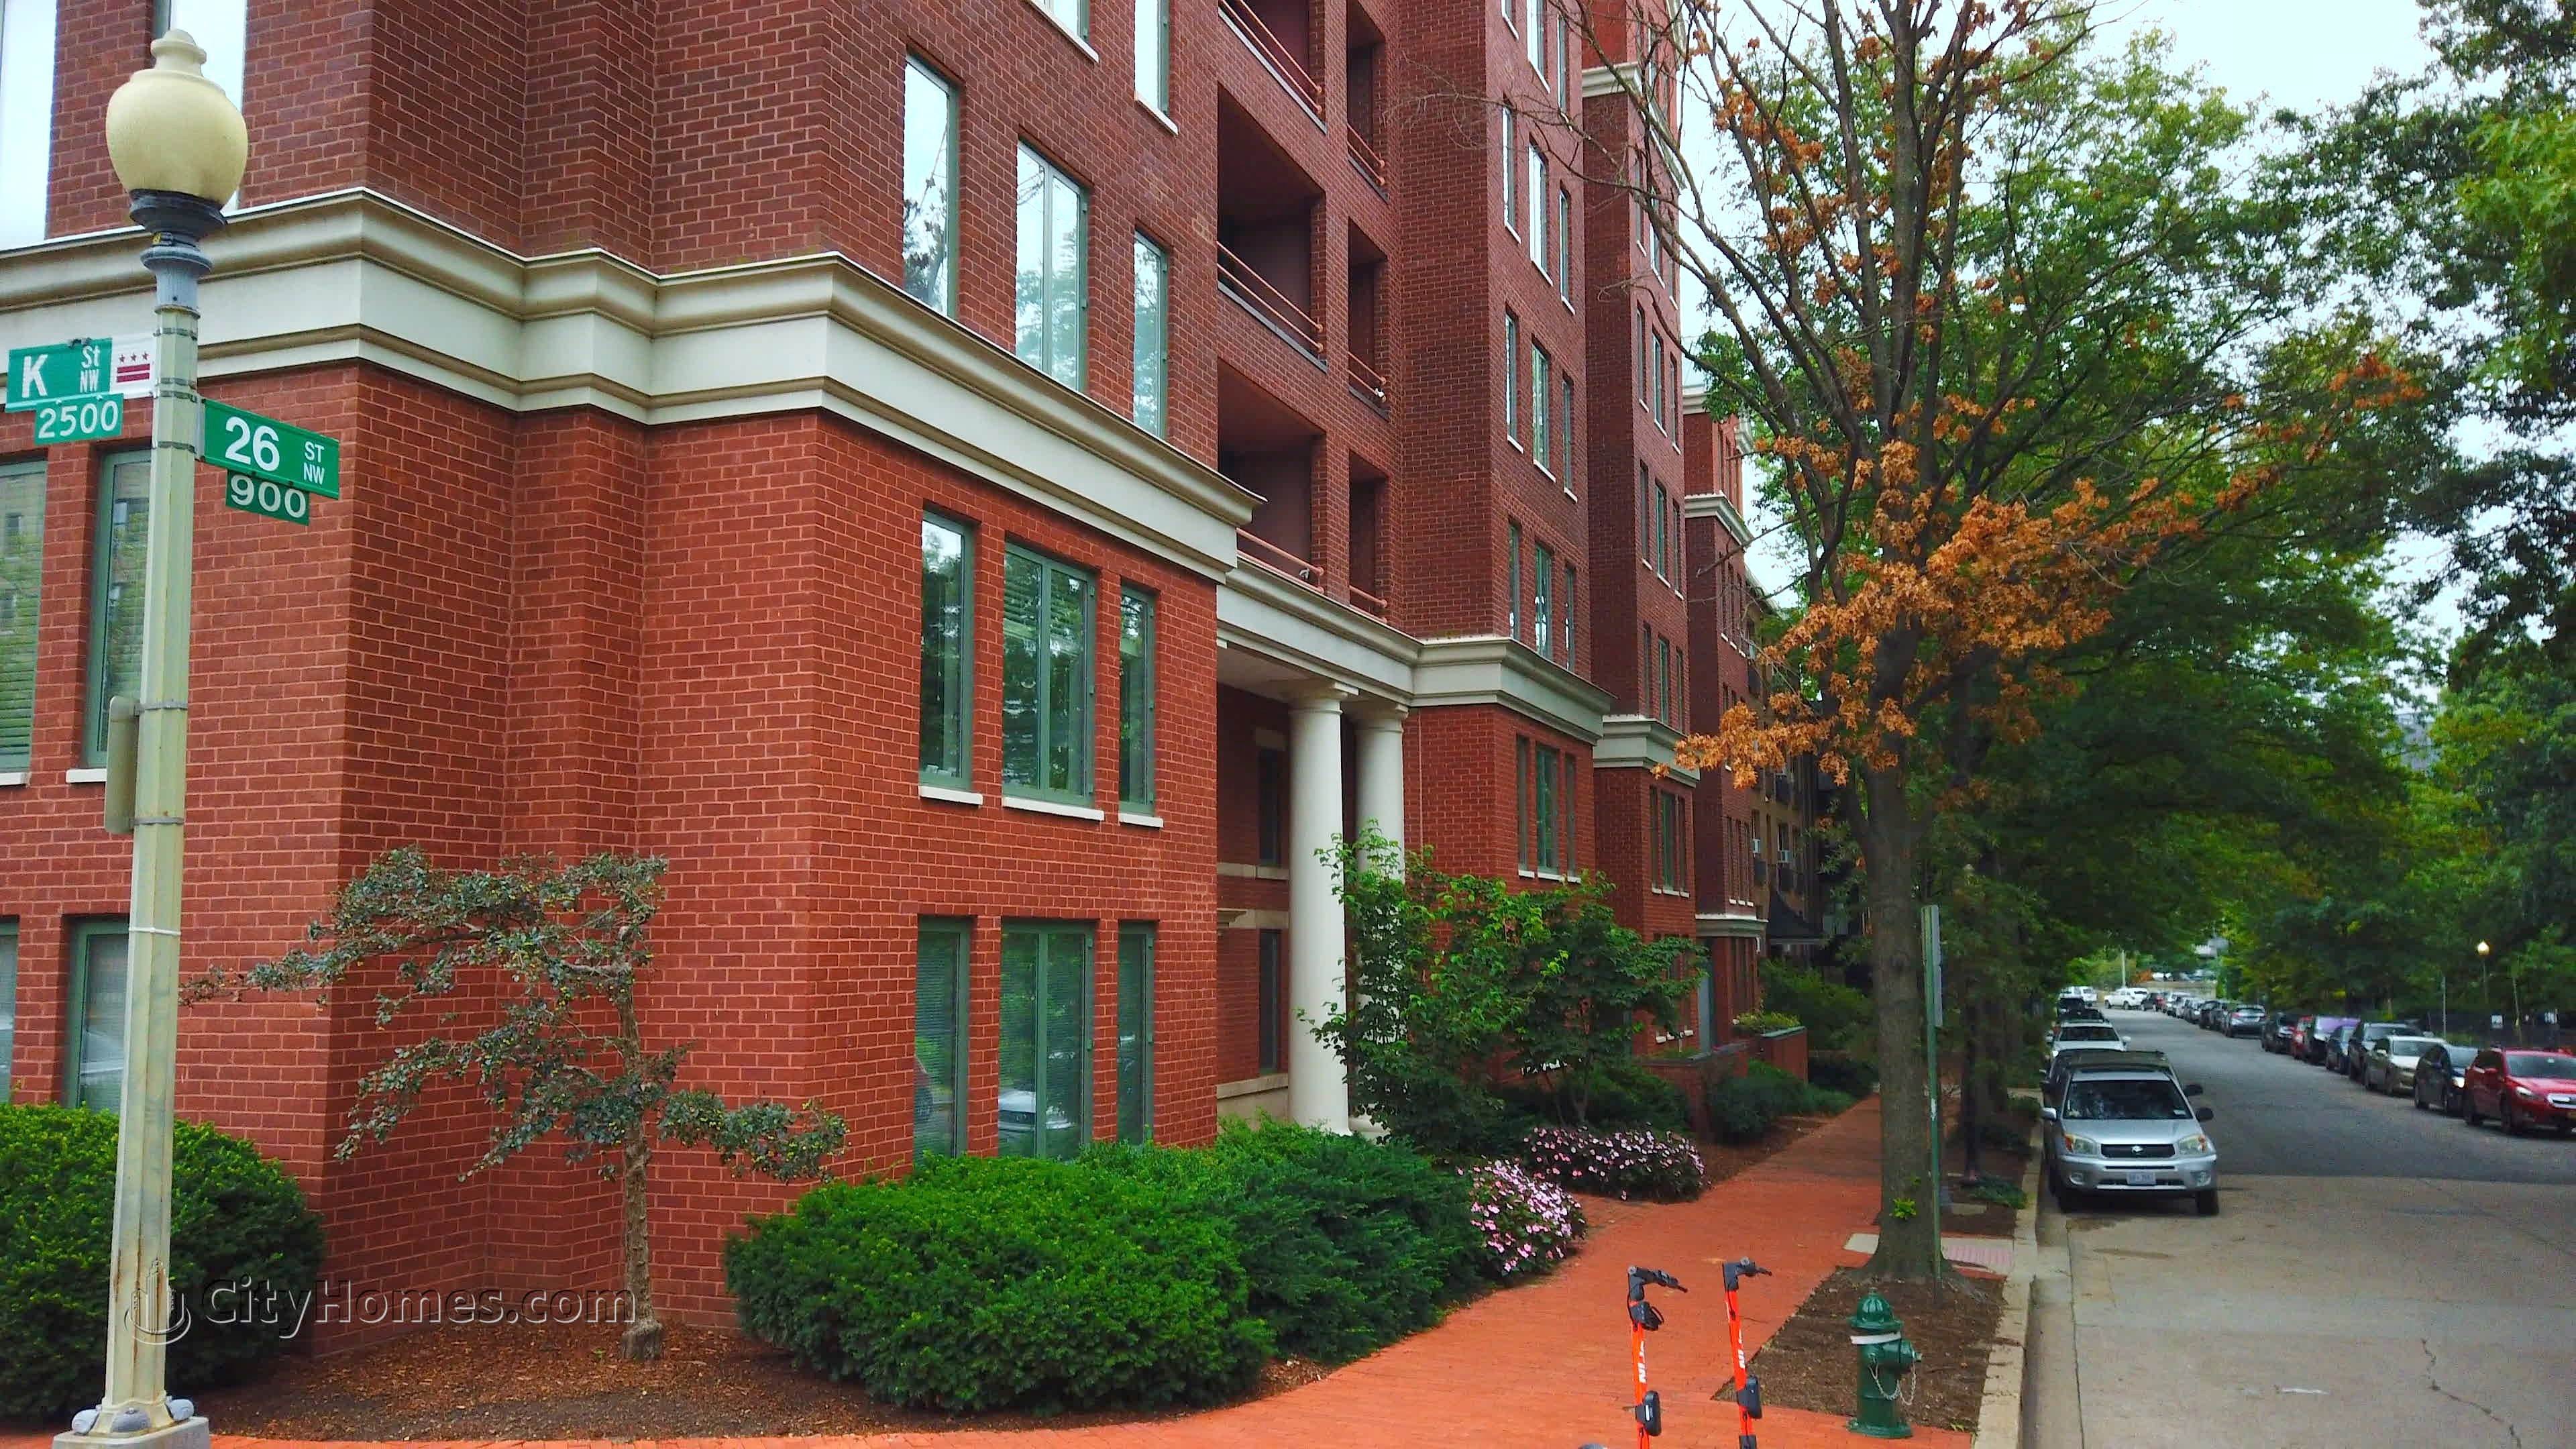 6. The Griffin byggnad vid 955 26th St NW, Foggy Bottom, Washington, DC 20037